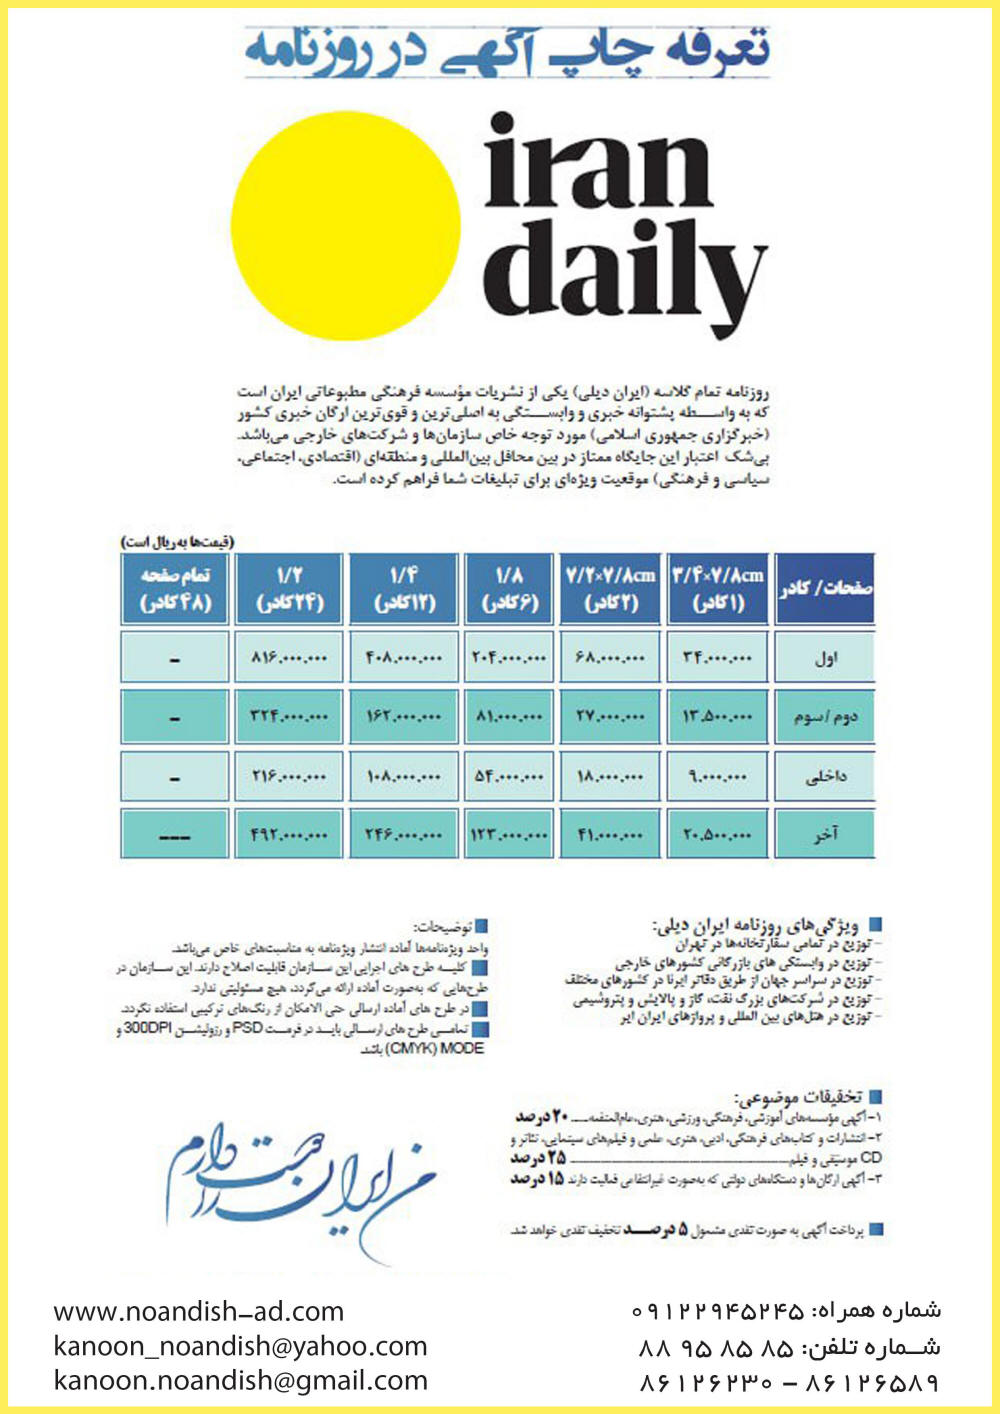 چاپ آگهی روزنامه ایران دیلی